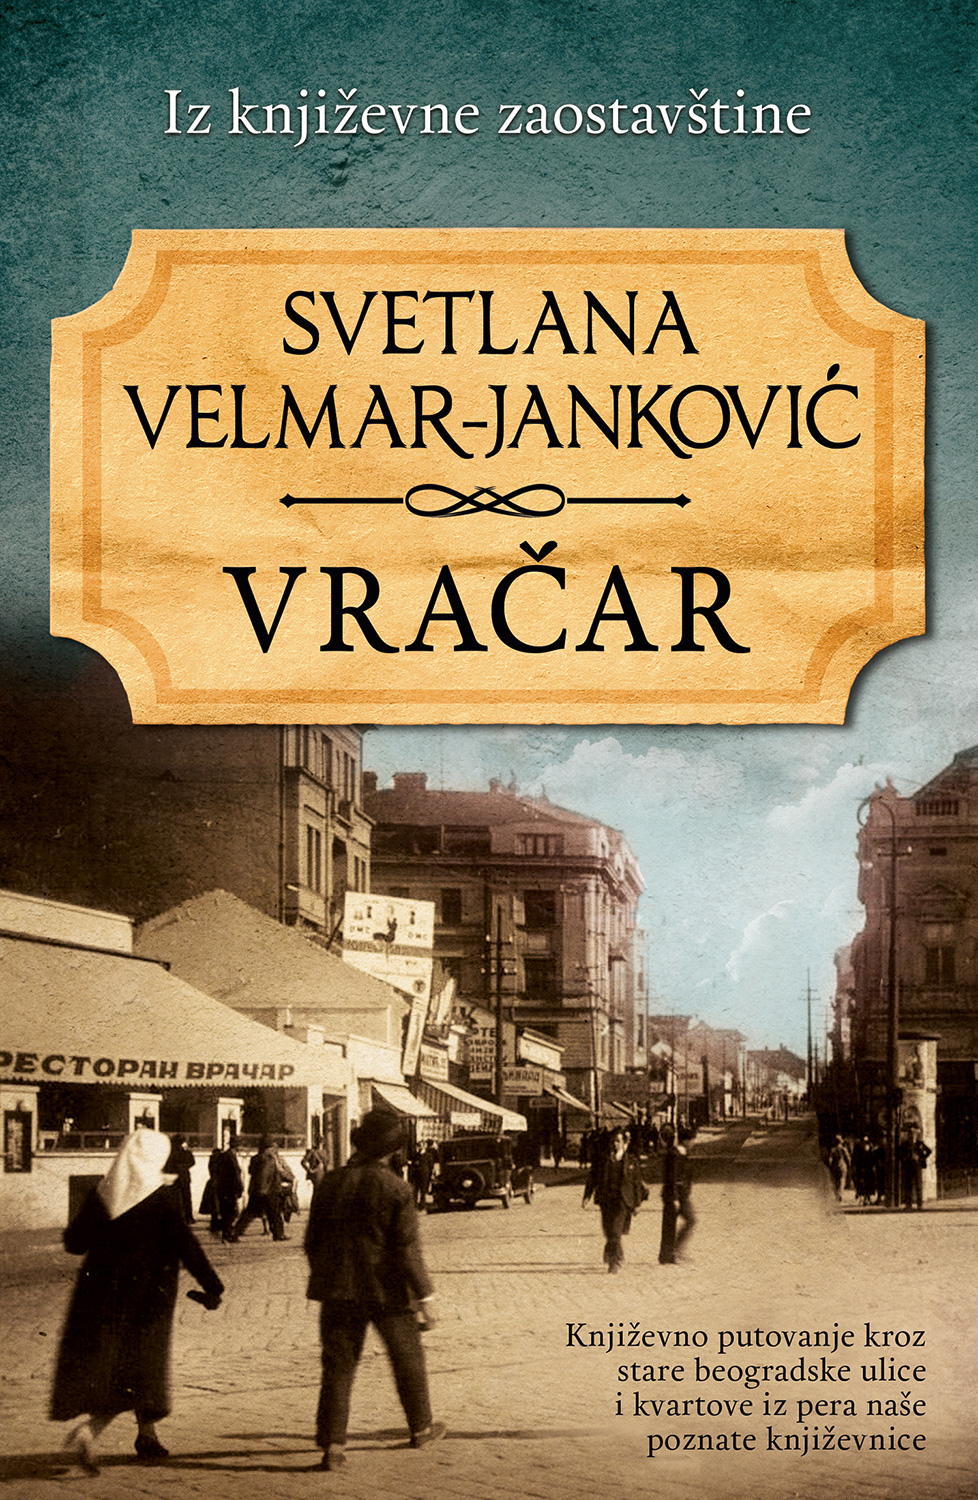 Književno putovanje kroz stare beogradske ulice